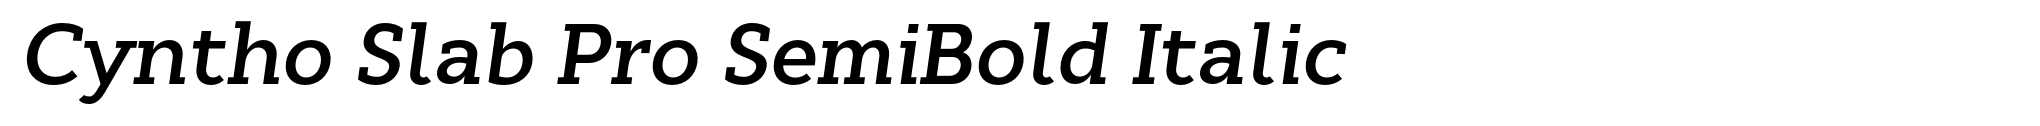 Cyntho Slab Pro SemiBold Italic image